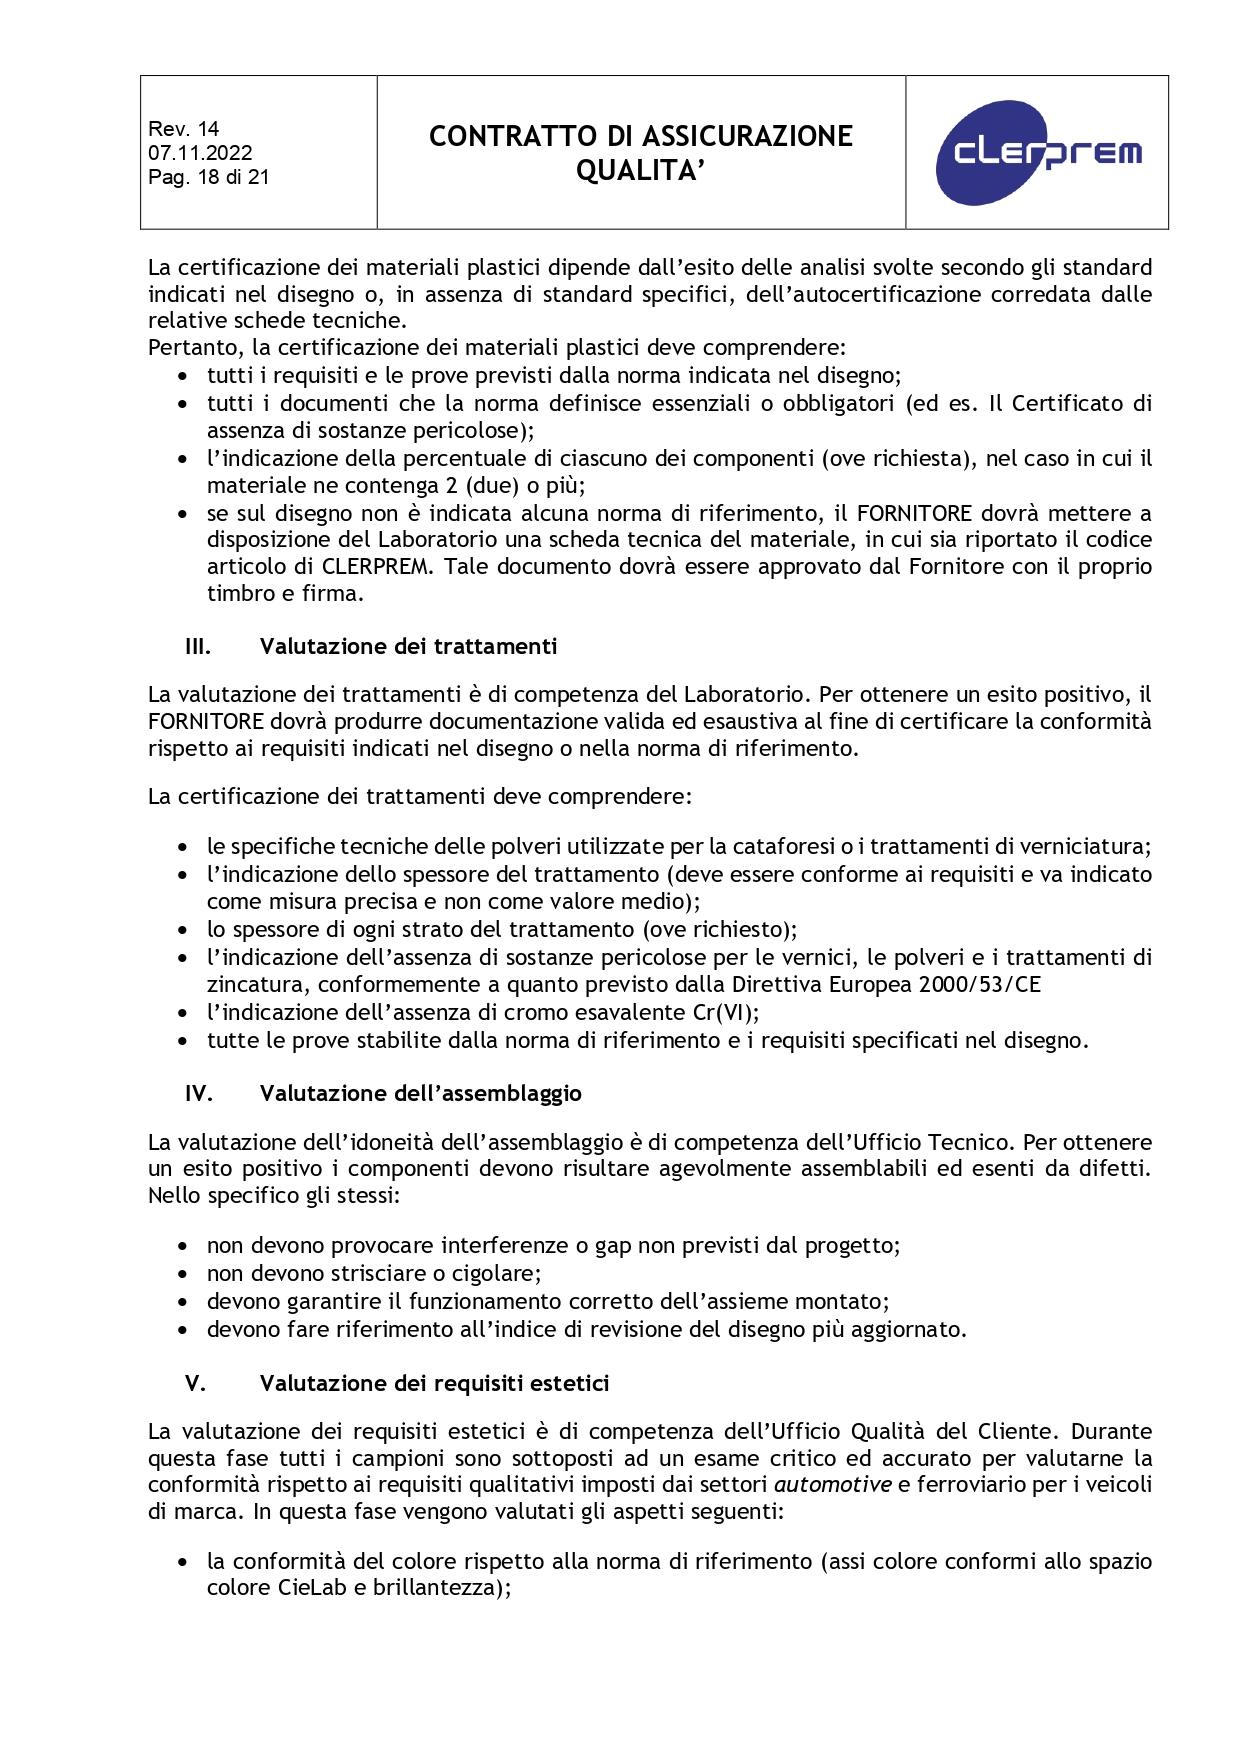 Accordo di Assicurazione Qualità rev. 14_page-0018